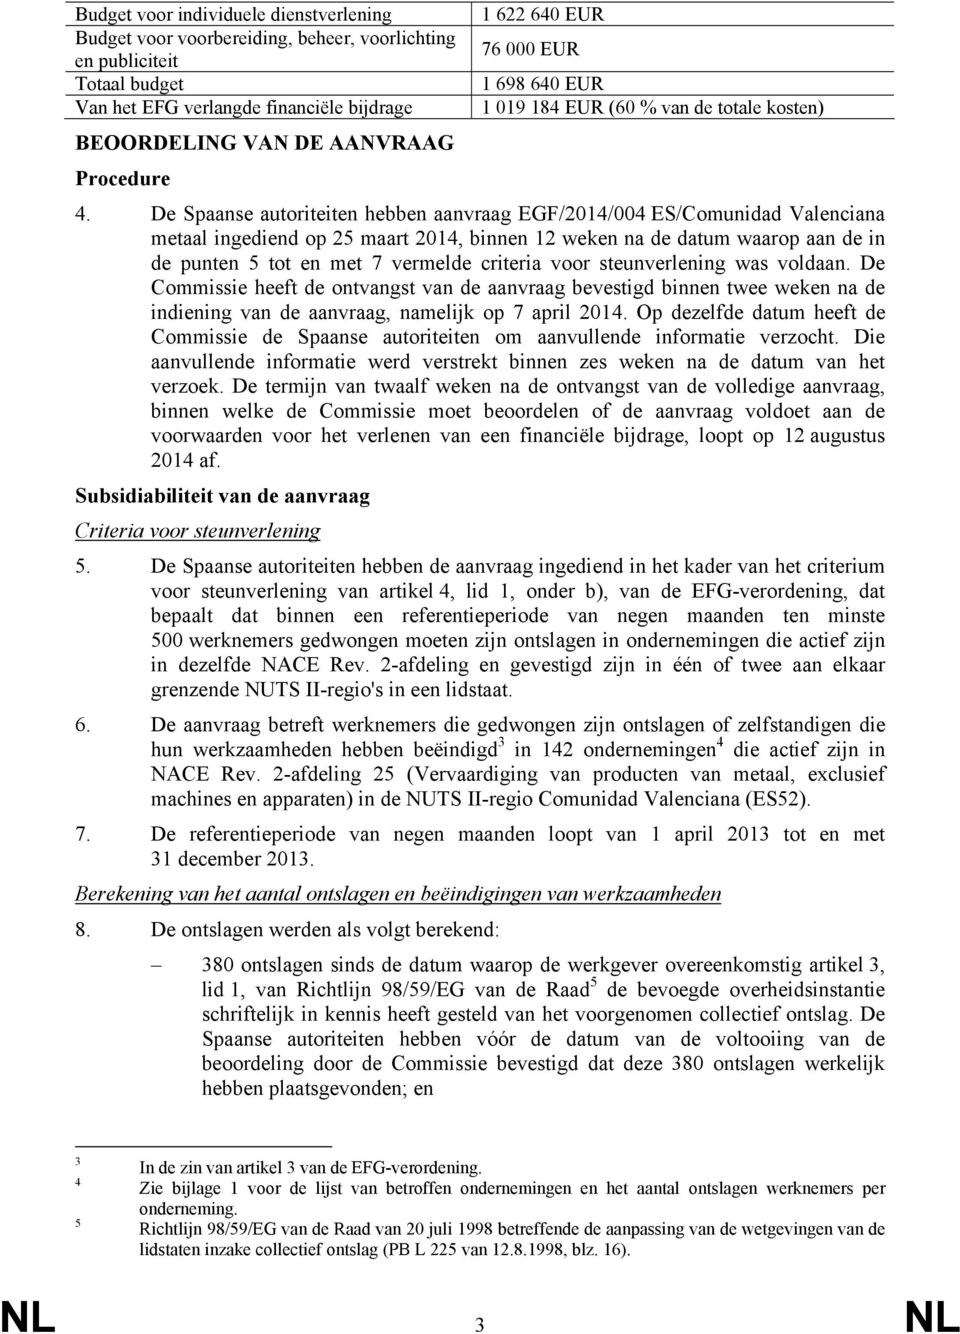 De Spaanse autoriteiten hebben aanvraag EGF/2014/004 ES/Comunidad Valenciana metaal ingediend op 25 maart 2014, binnen 12 weken na de datum waarop aan de in de punten 5 tot en met 7 vermelde criteria